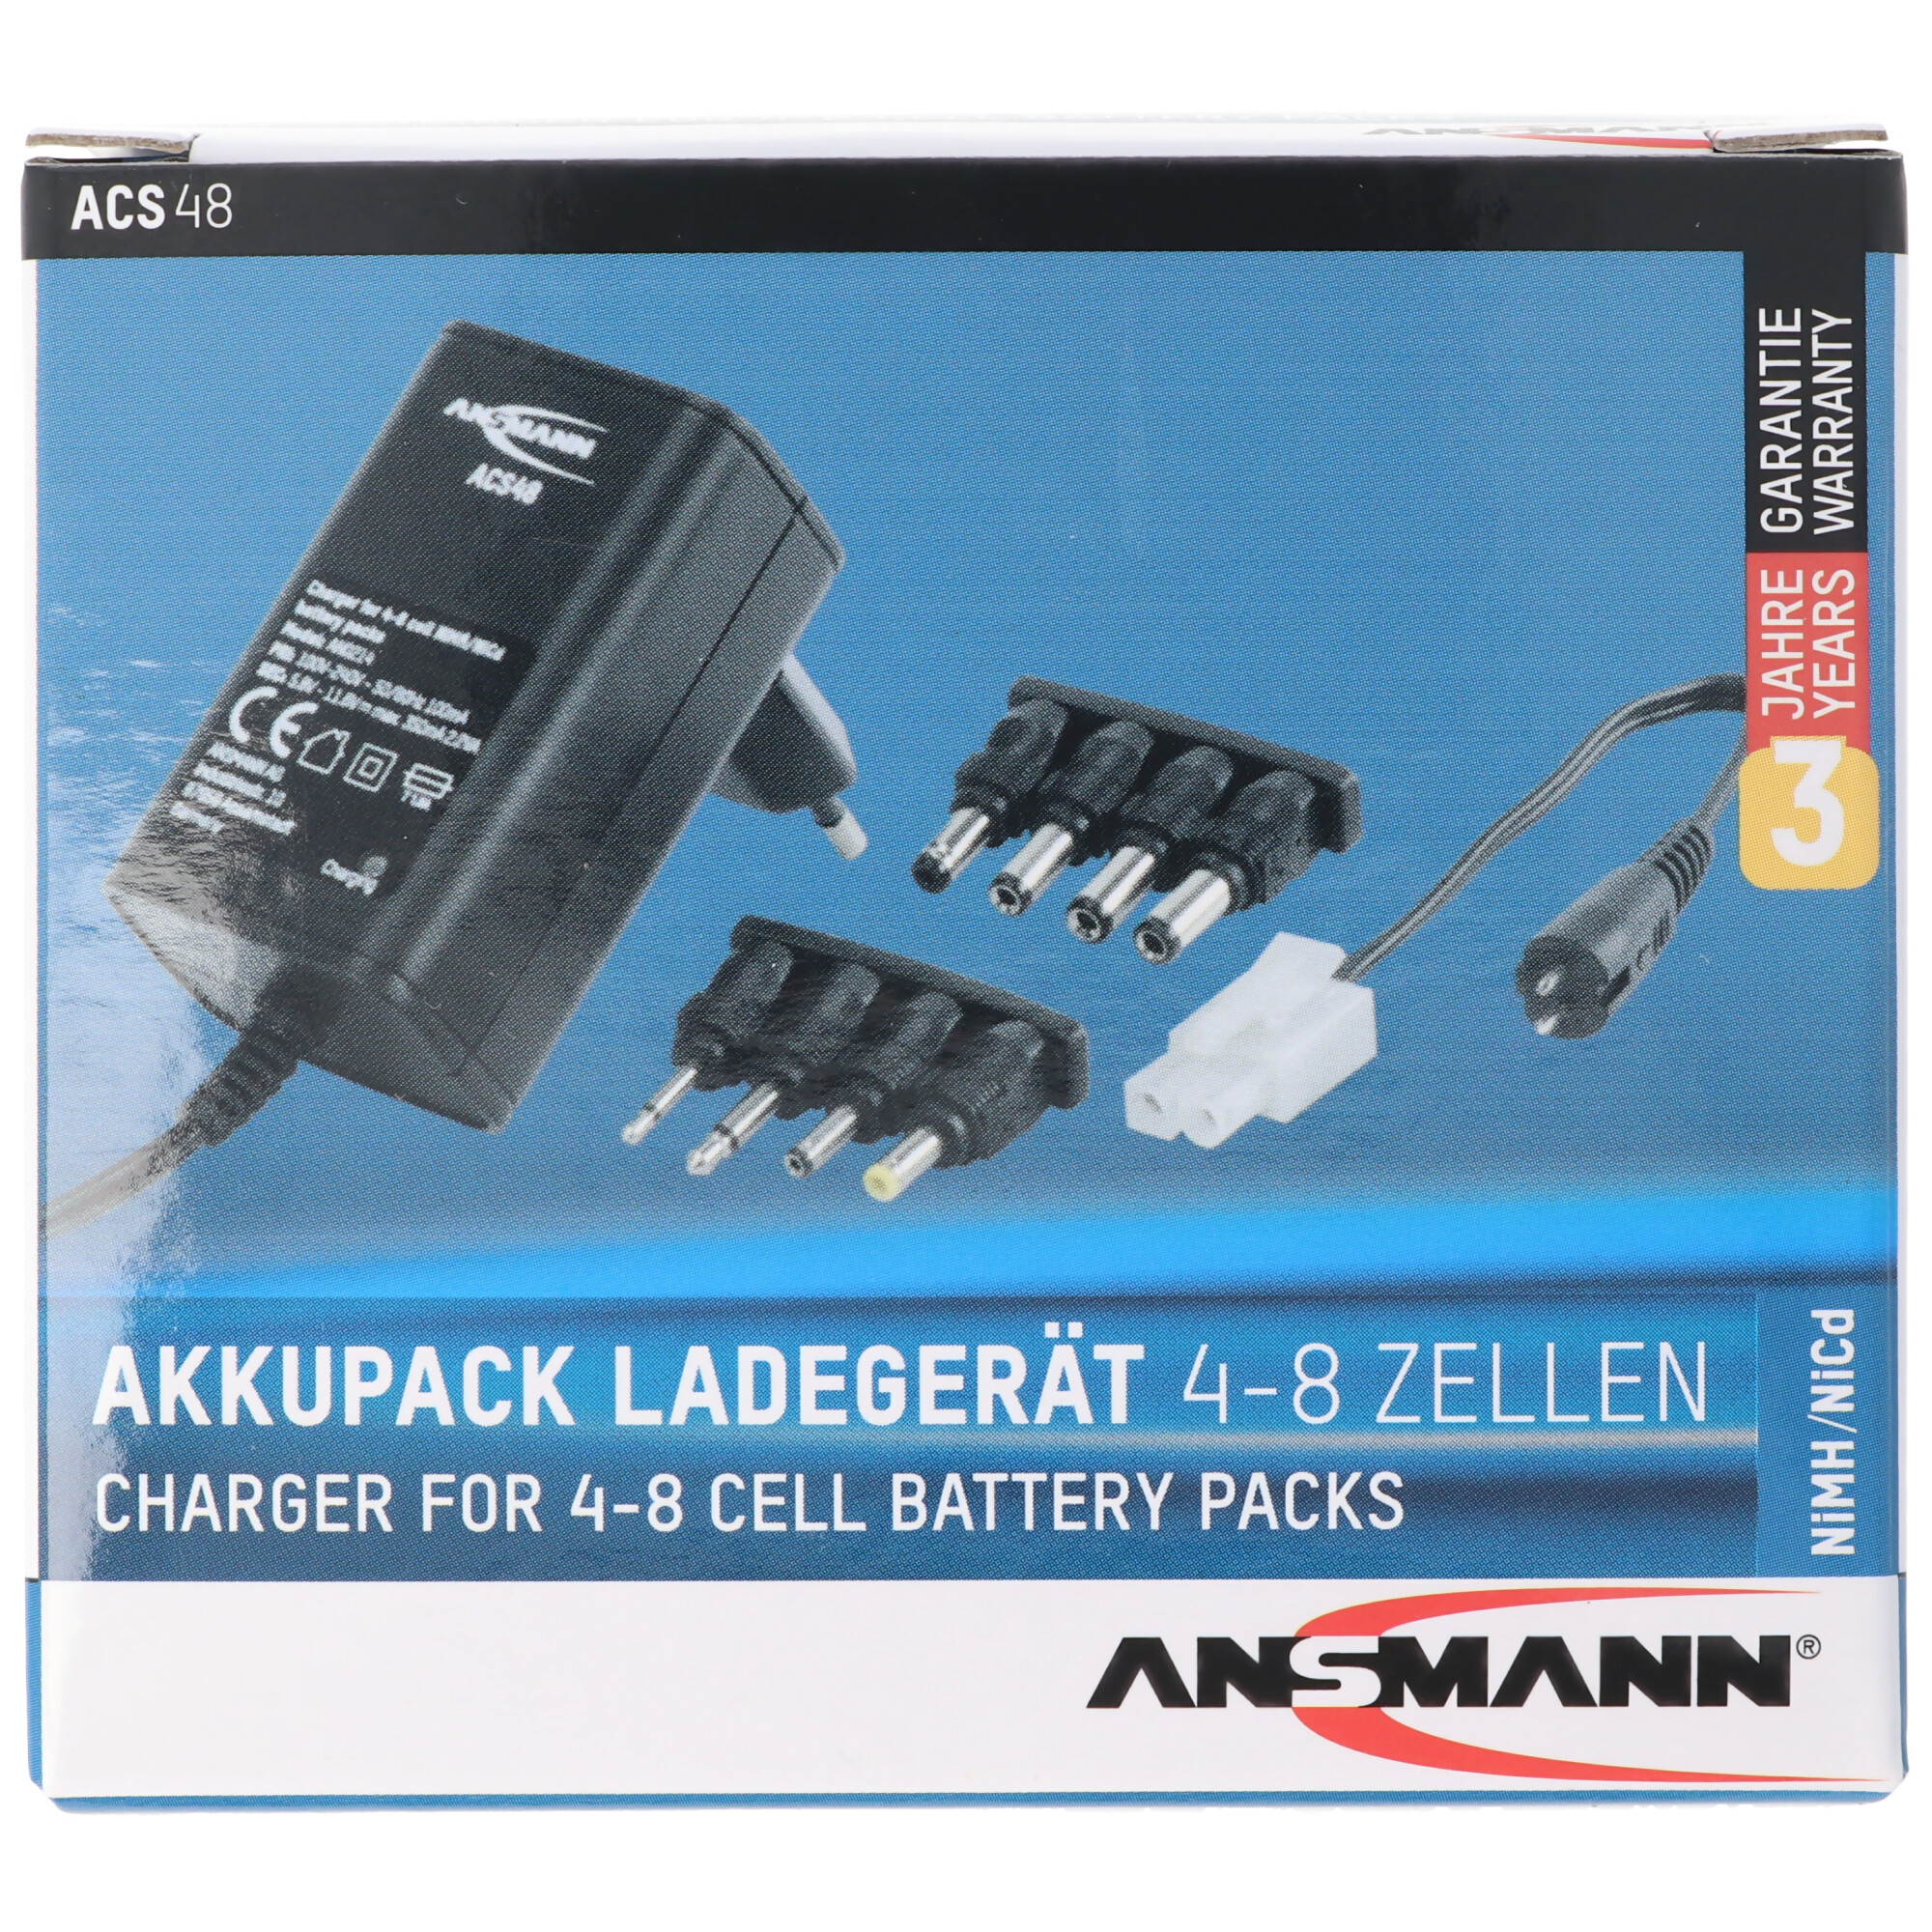 Ansmann cargador acs48 1001-0024 para 4,8-9,6 voltios batería Packs 